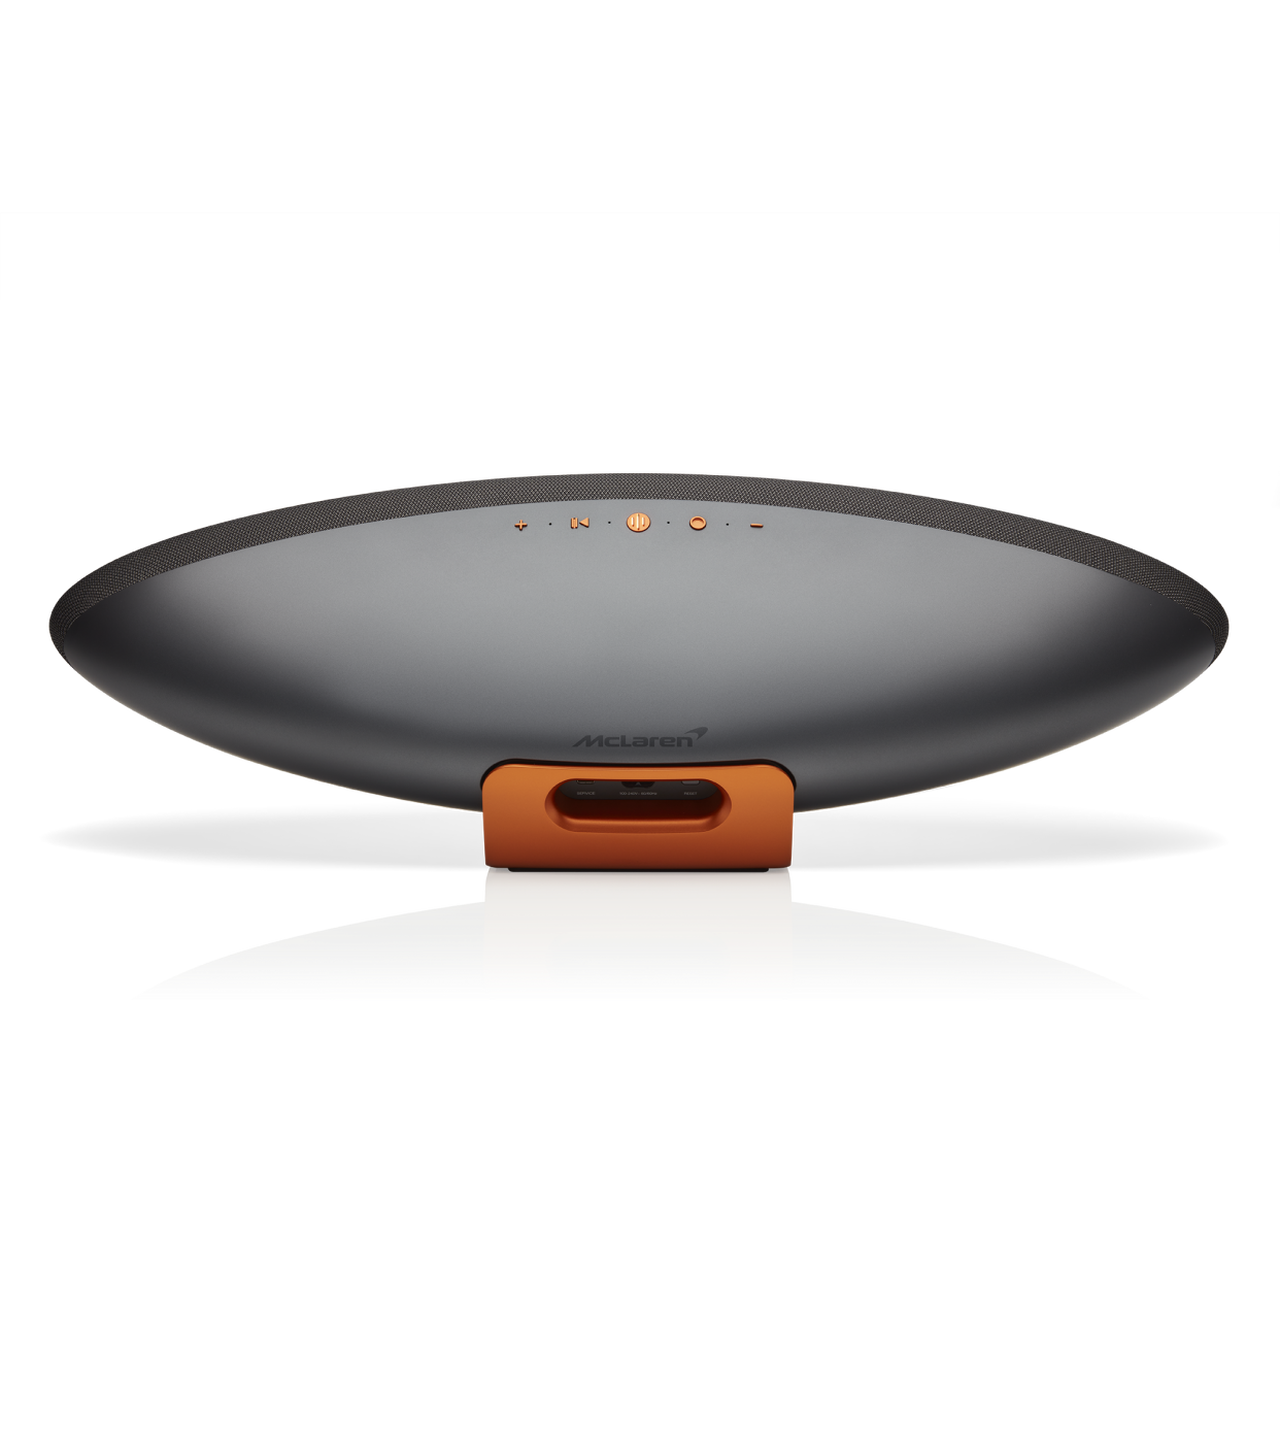 Bowers & Wilkins Zeppelin McLaren Edition Wireless Smart Speaker - Galvanic Grey & Papaya Orange